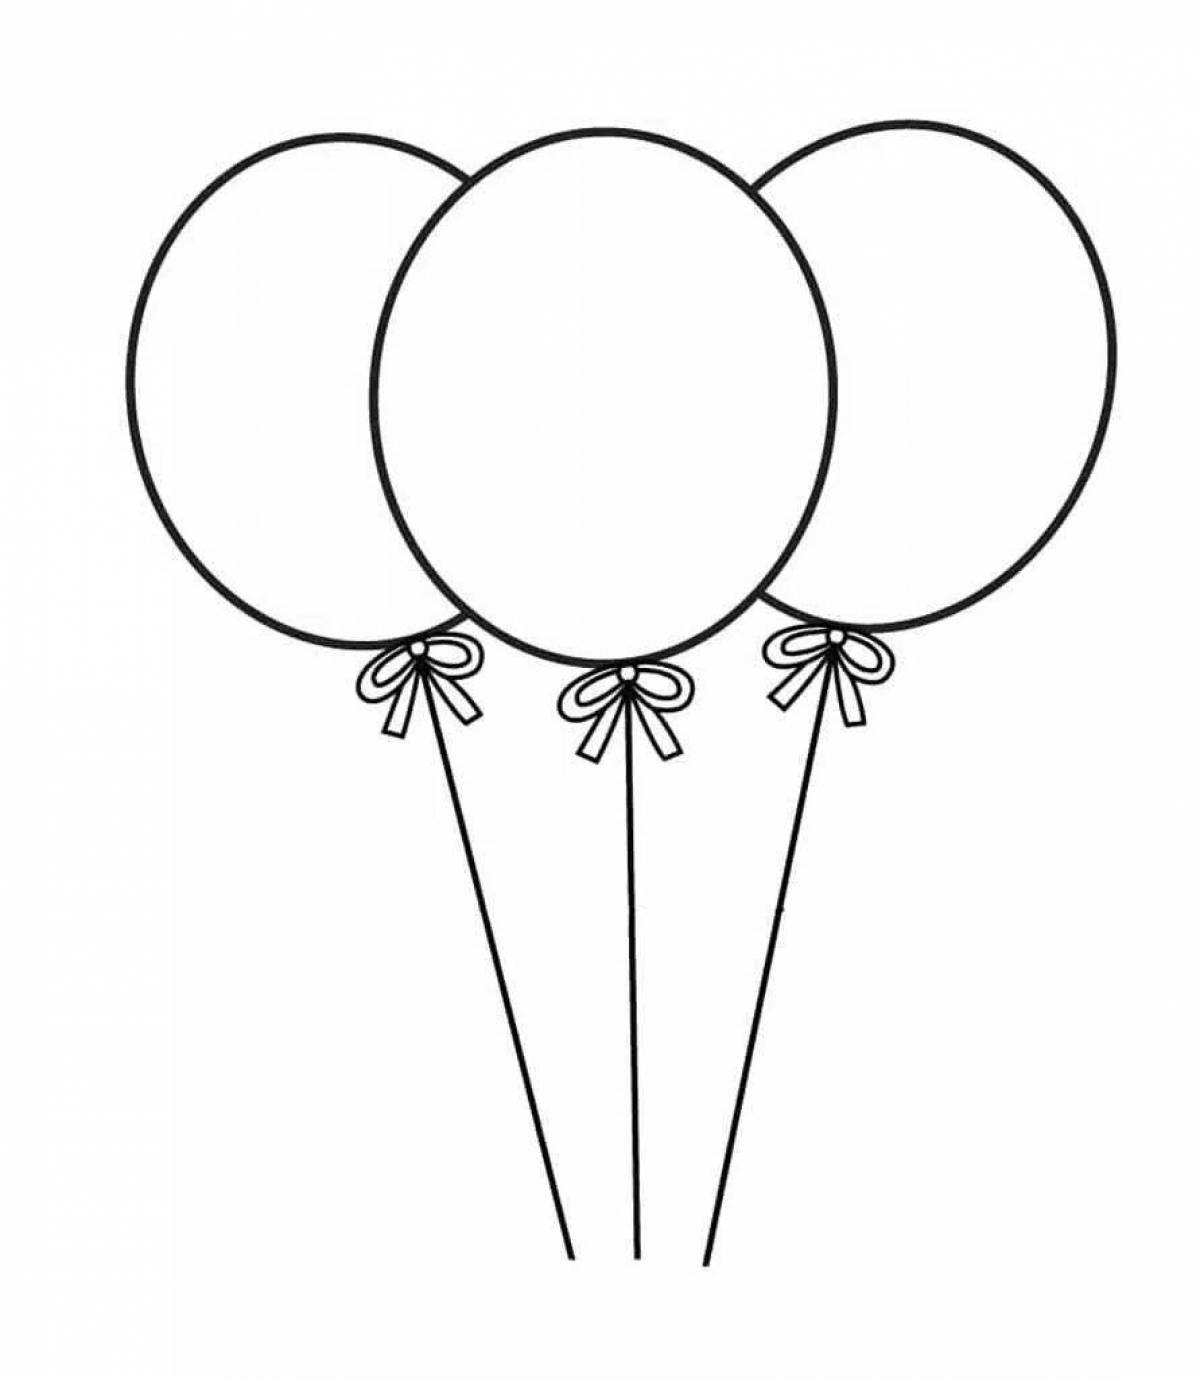 Яркие детские воздушные шары для детей 2-3 лет